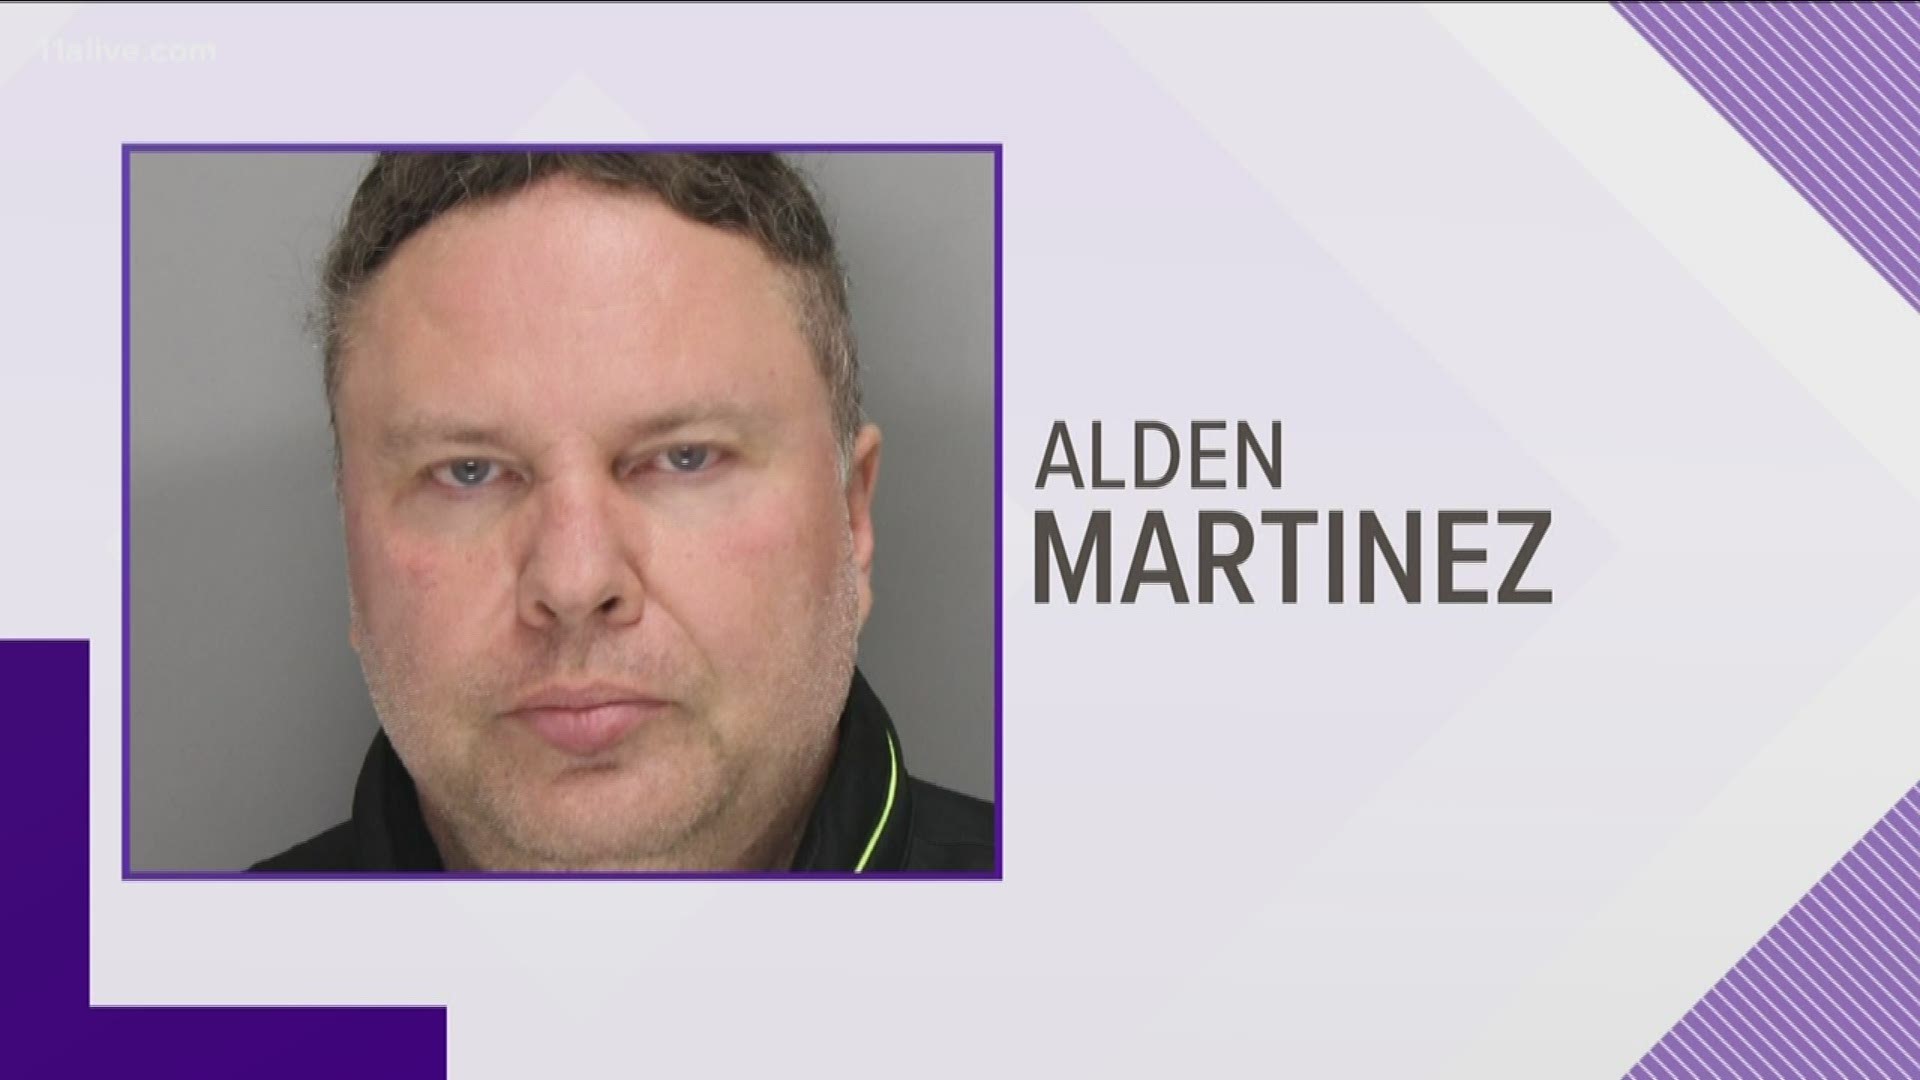 Alden Martinez  was taken into custody.